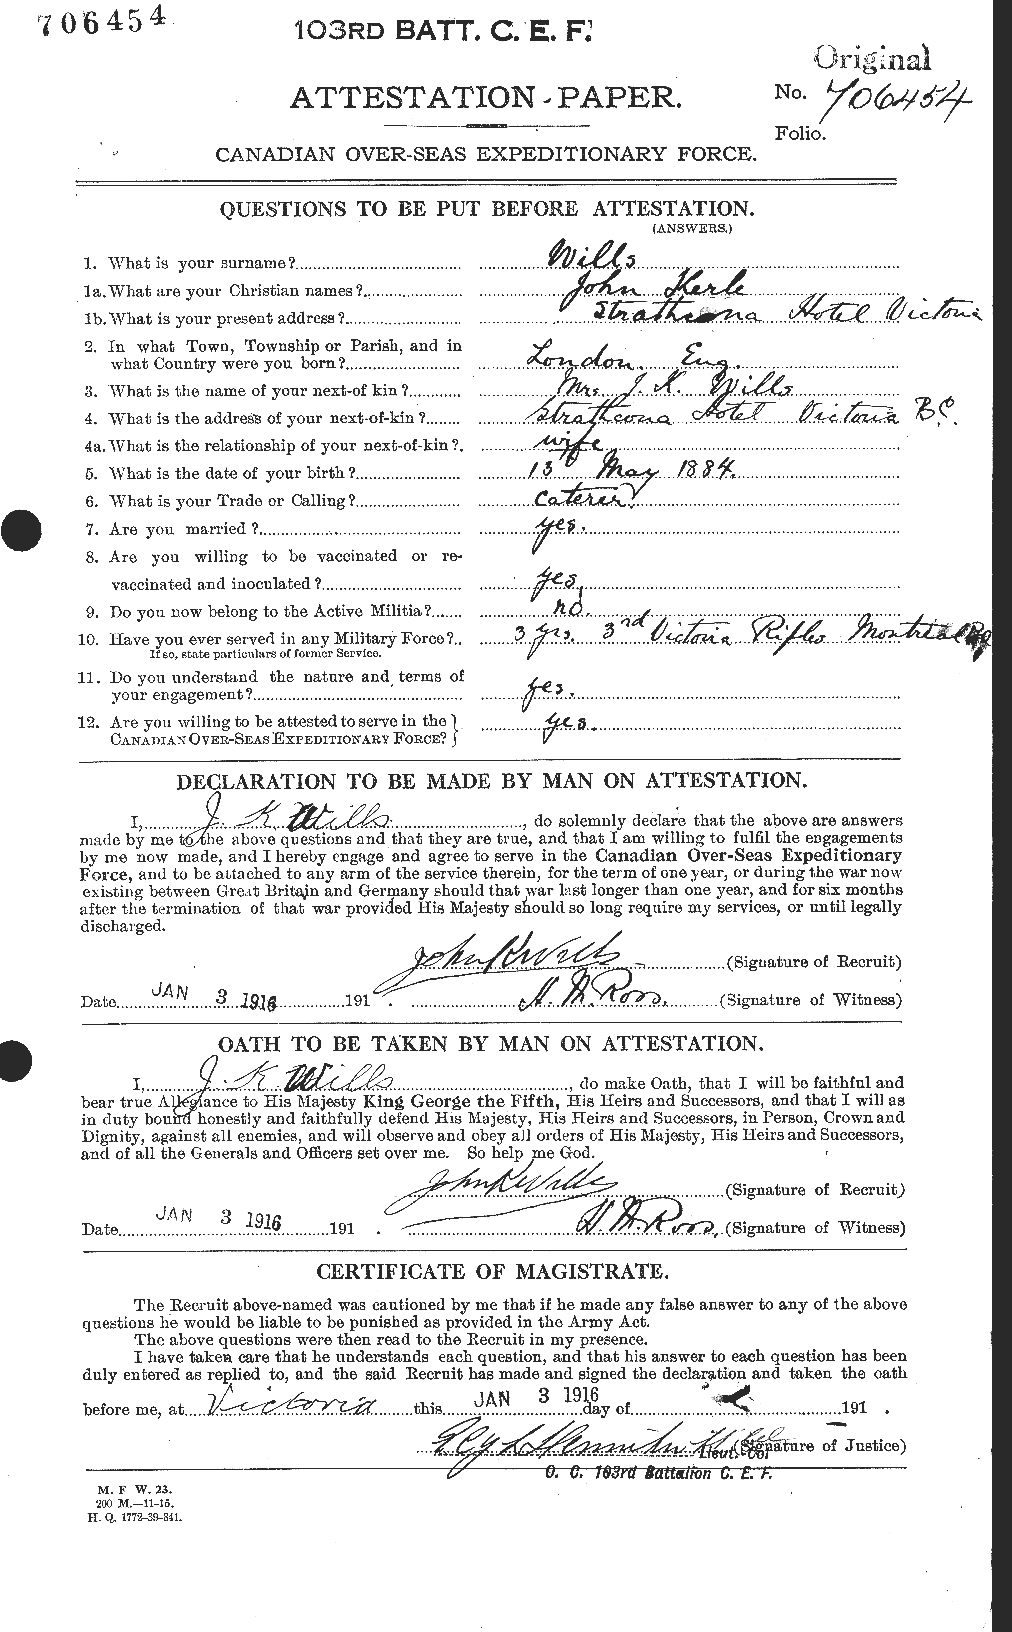 Dossiers du Personnel de la Première Guerre mondiale - CEC 678418a